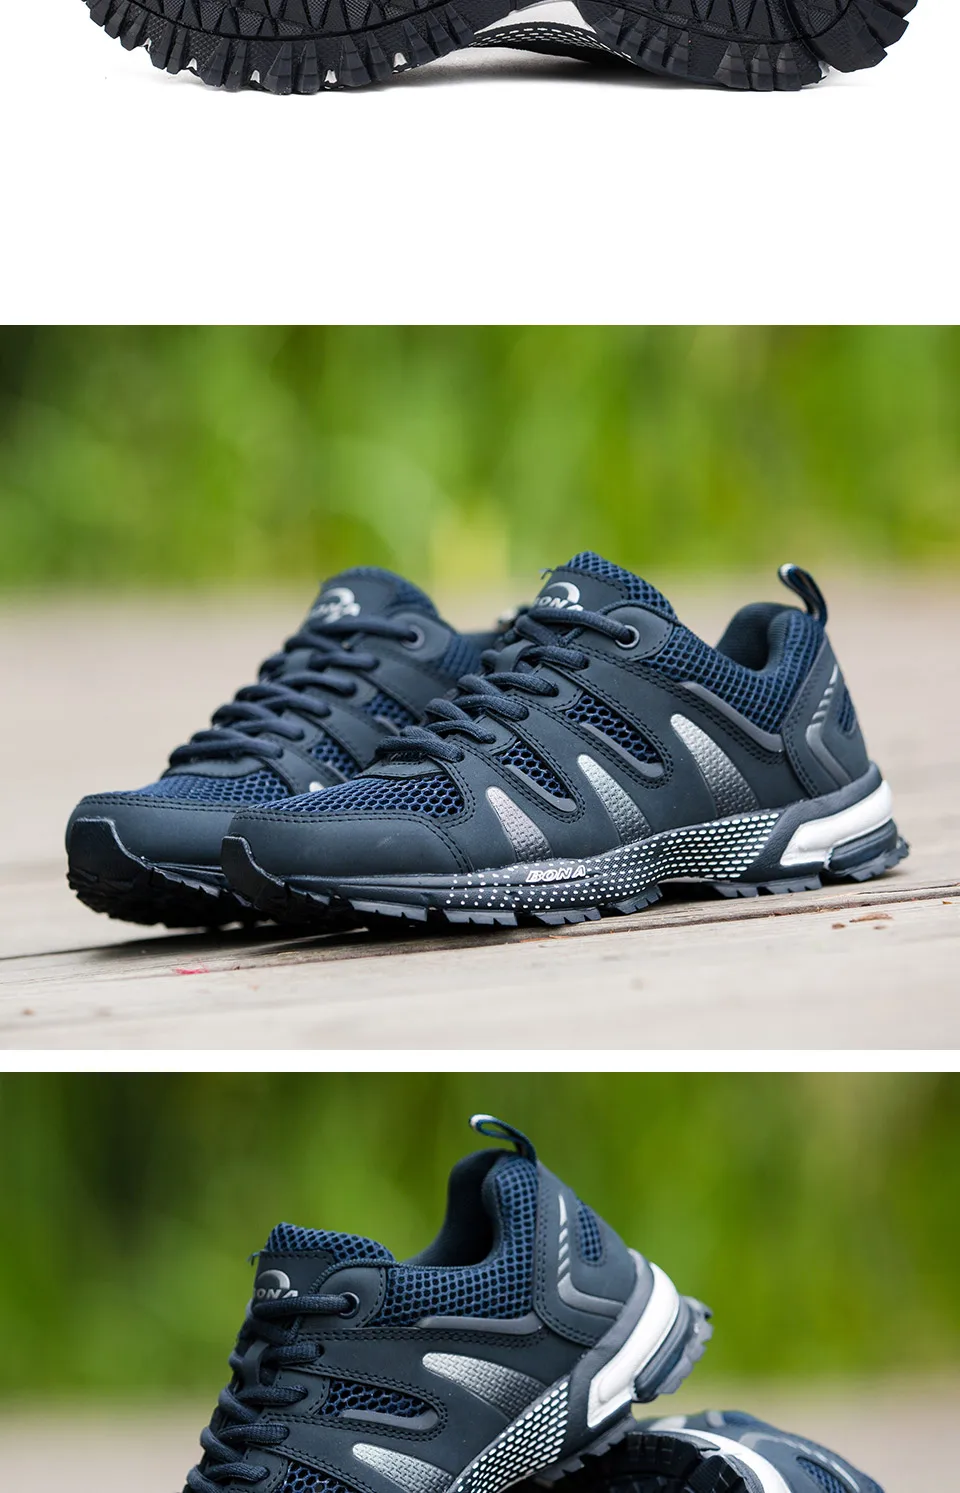 BONA/Новое поступление; классические стильные женские кроссовки для бега; удобная спортивная обувь для женщин; Быстрая